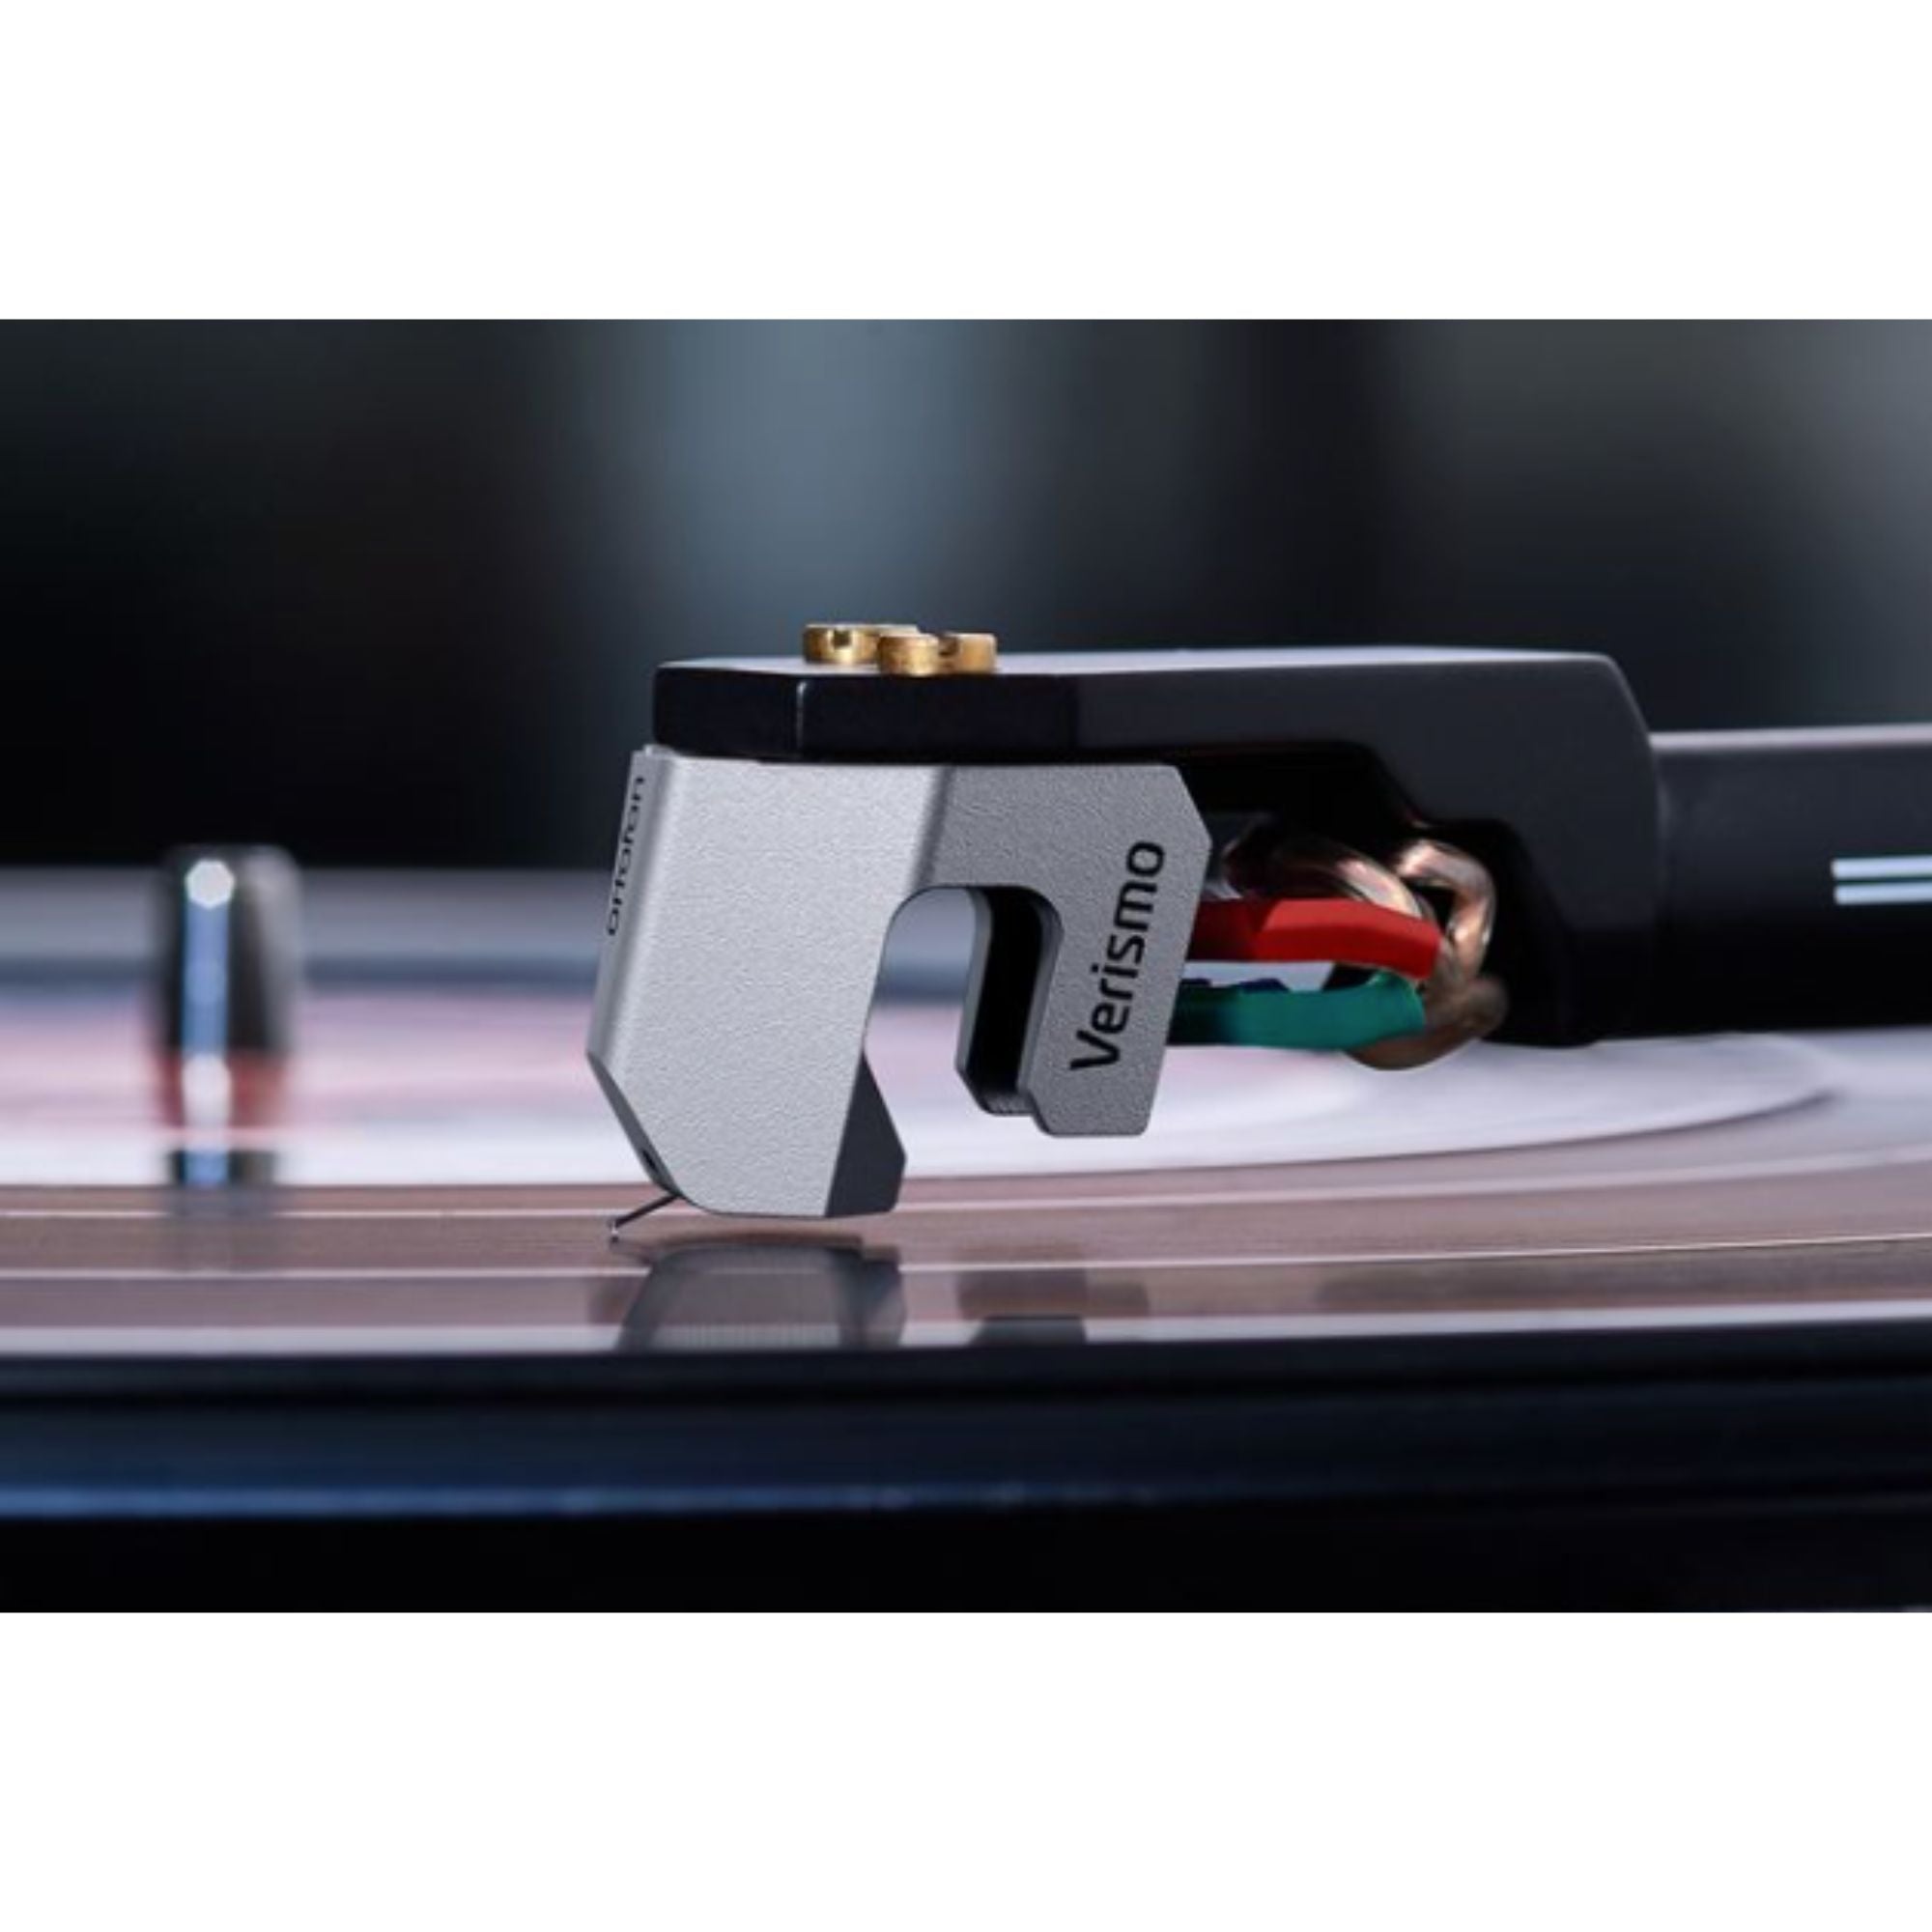 Ortofon MC Verismo - Exclusive Moving Coil Cartridge, Ortofon, Turntable Accessories - AVStore.in